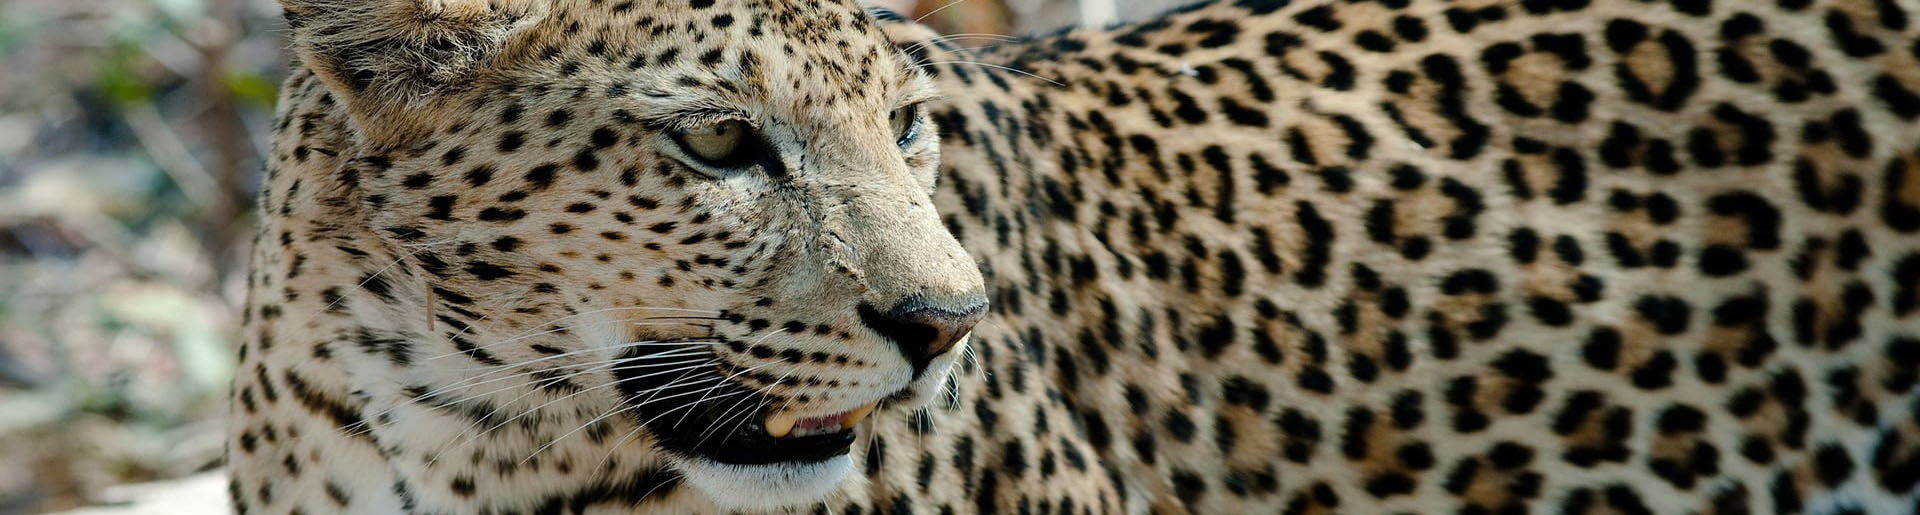 Bannerbild zu Botswana 4 x 4 Kleingruppenreise Leopard